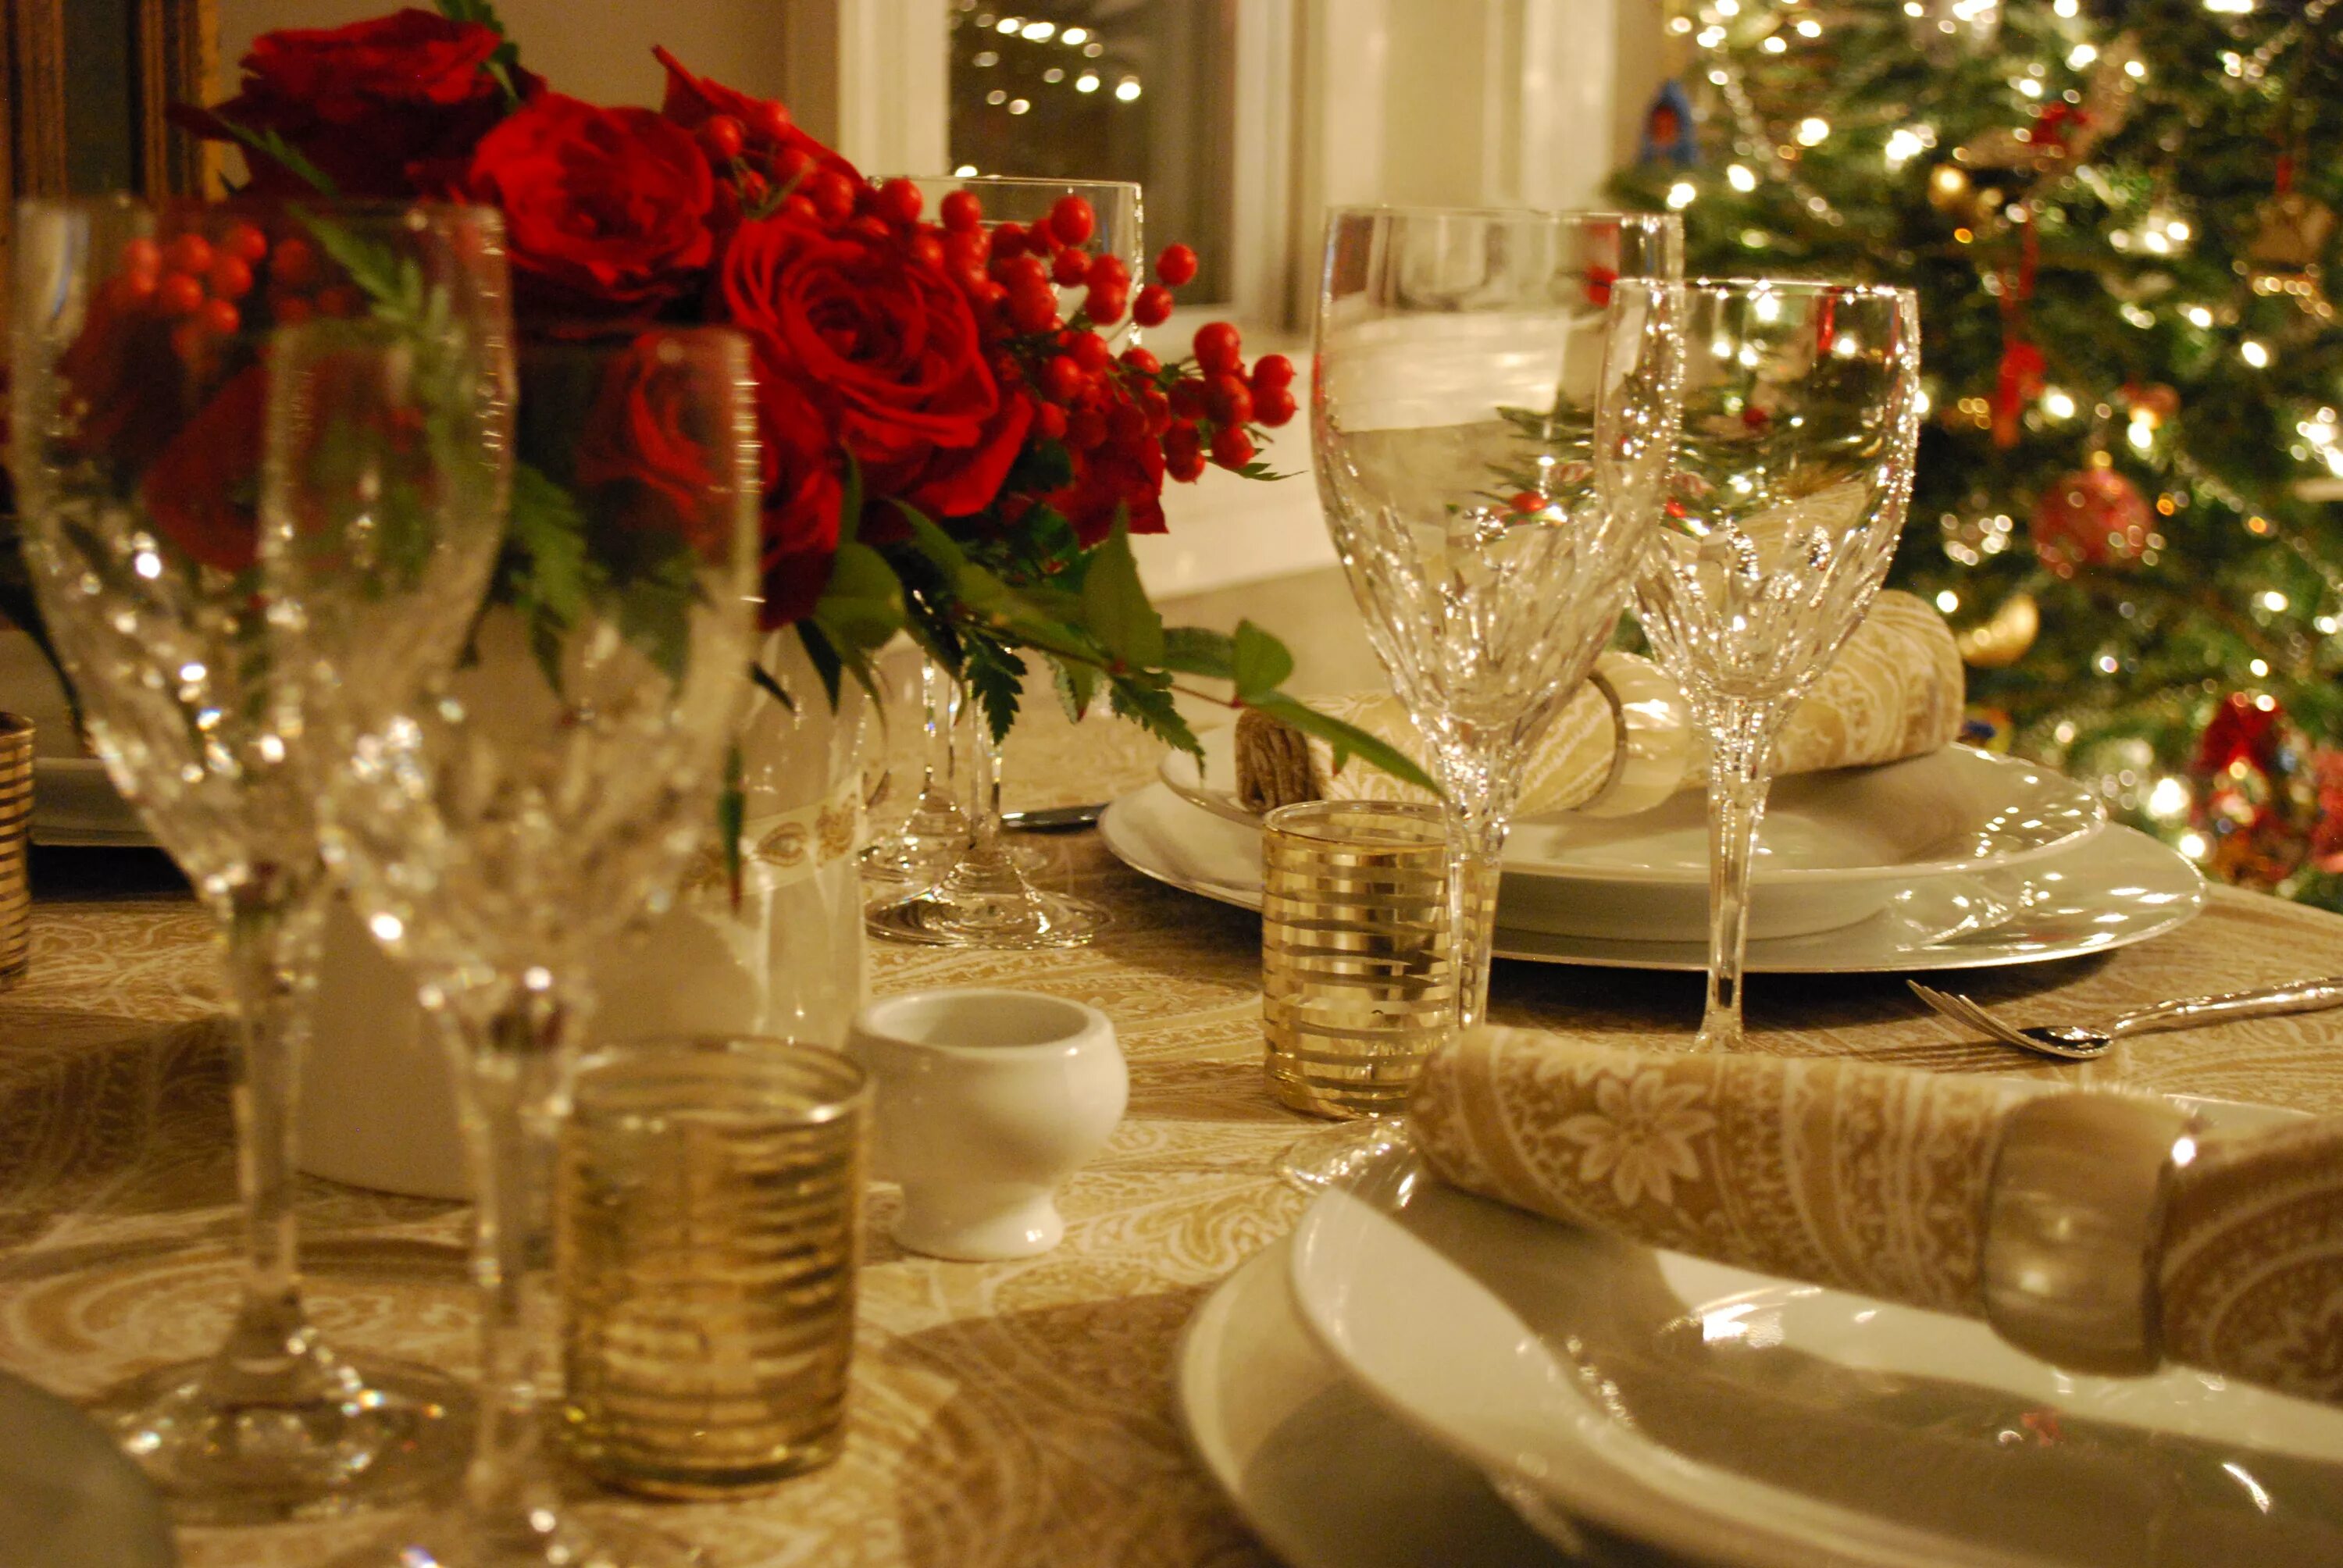 Картинки красивых столов. Сервировка праздничного стола на новый год. Красивый стол на новый год. Шикарный новогодний стол. Красиво сервированный новогодний стол.